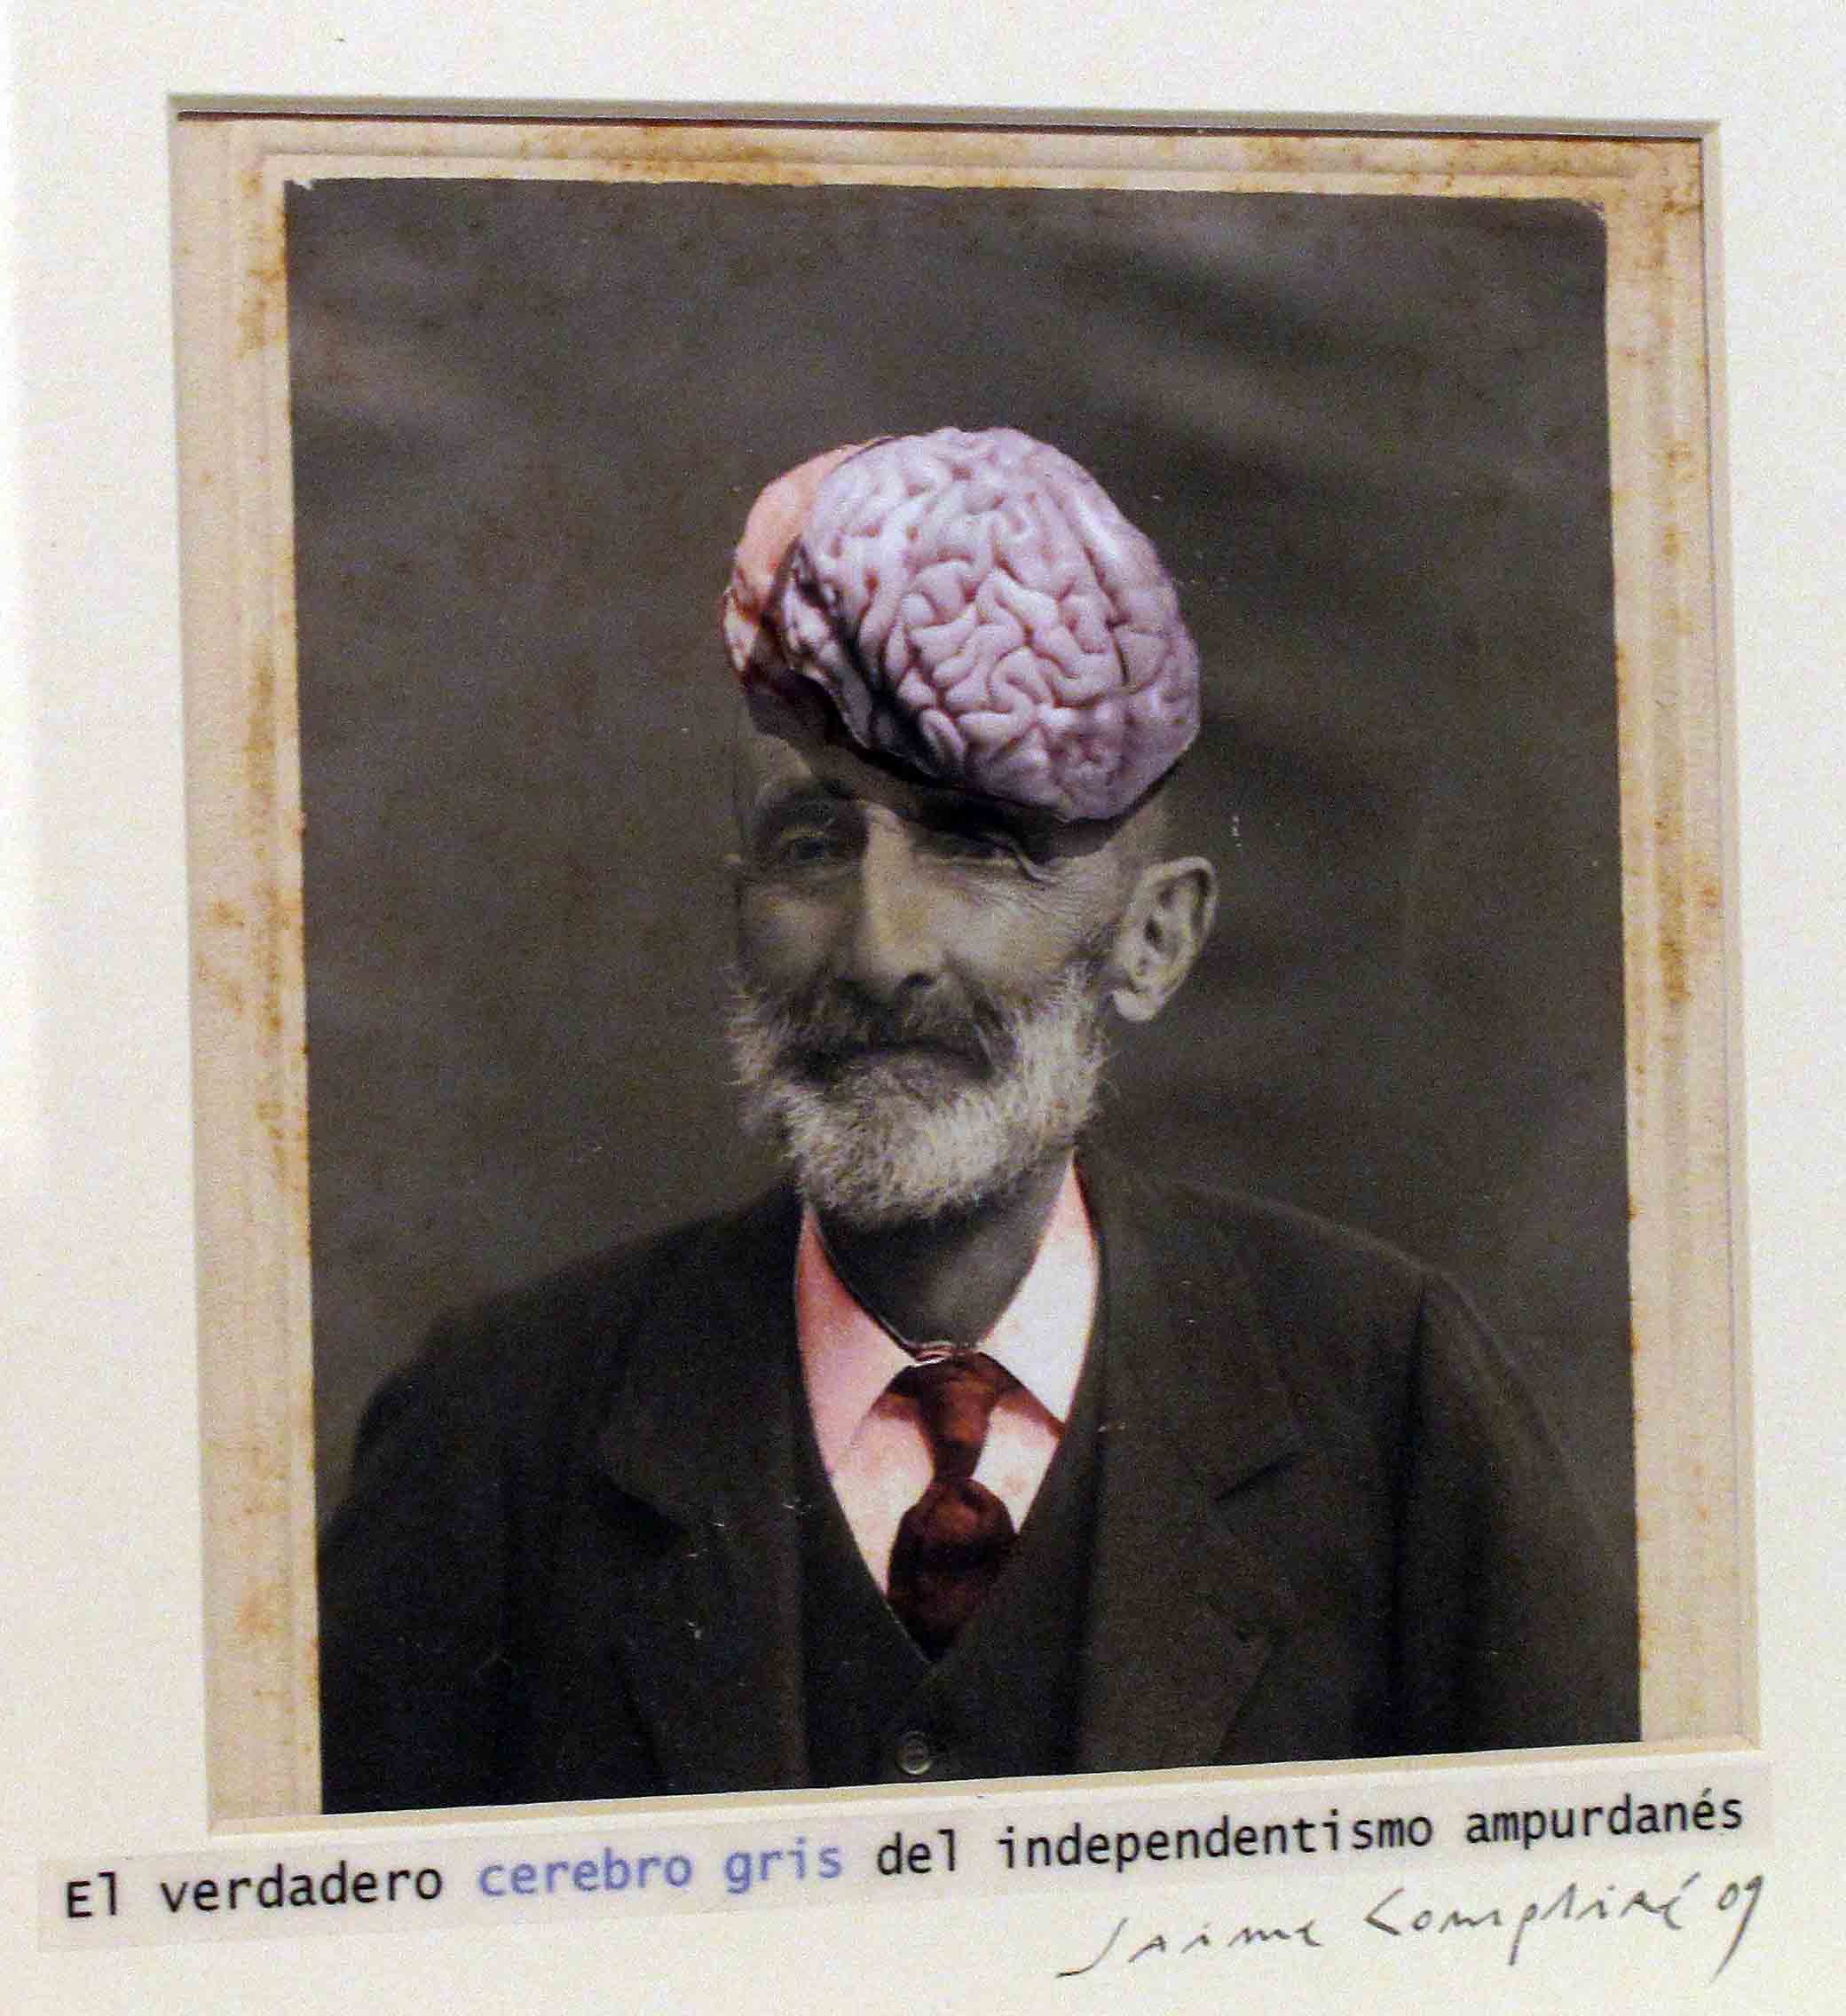 El verdadero cerebro gris del independentismo ampurdanes<br/>Fotografía de collage / Collage photography.